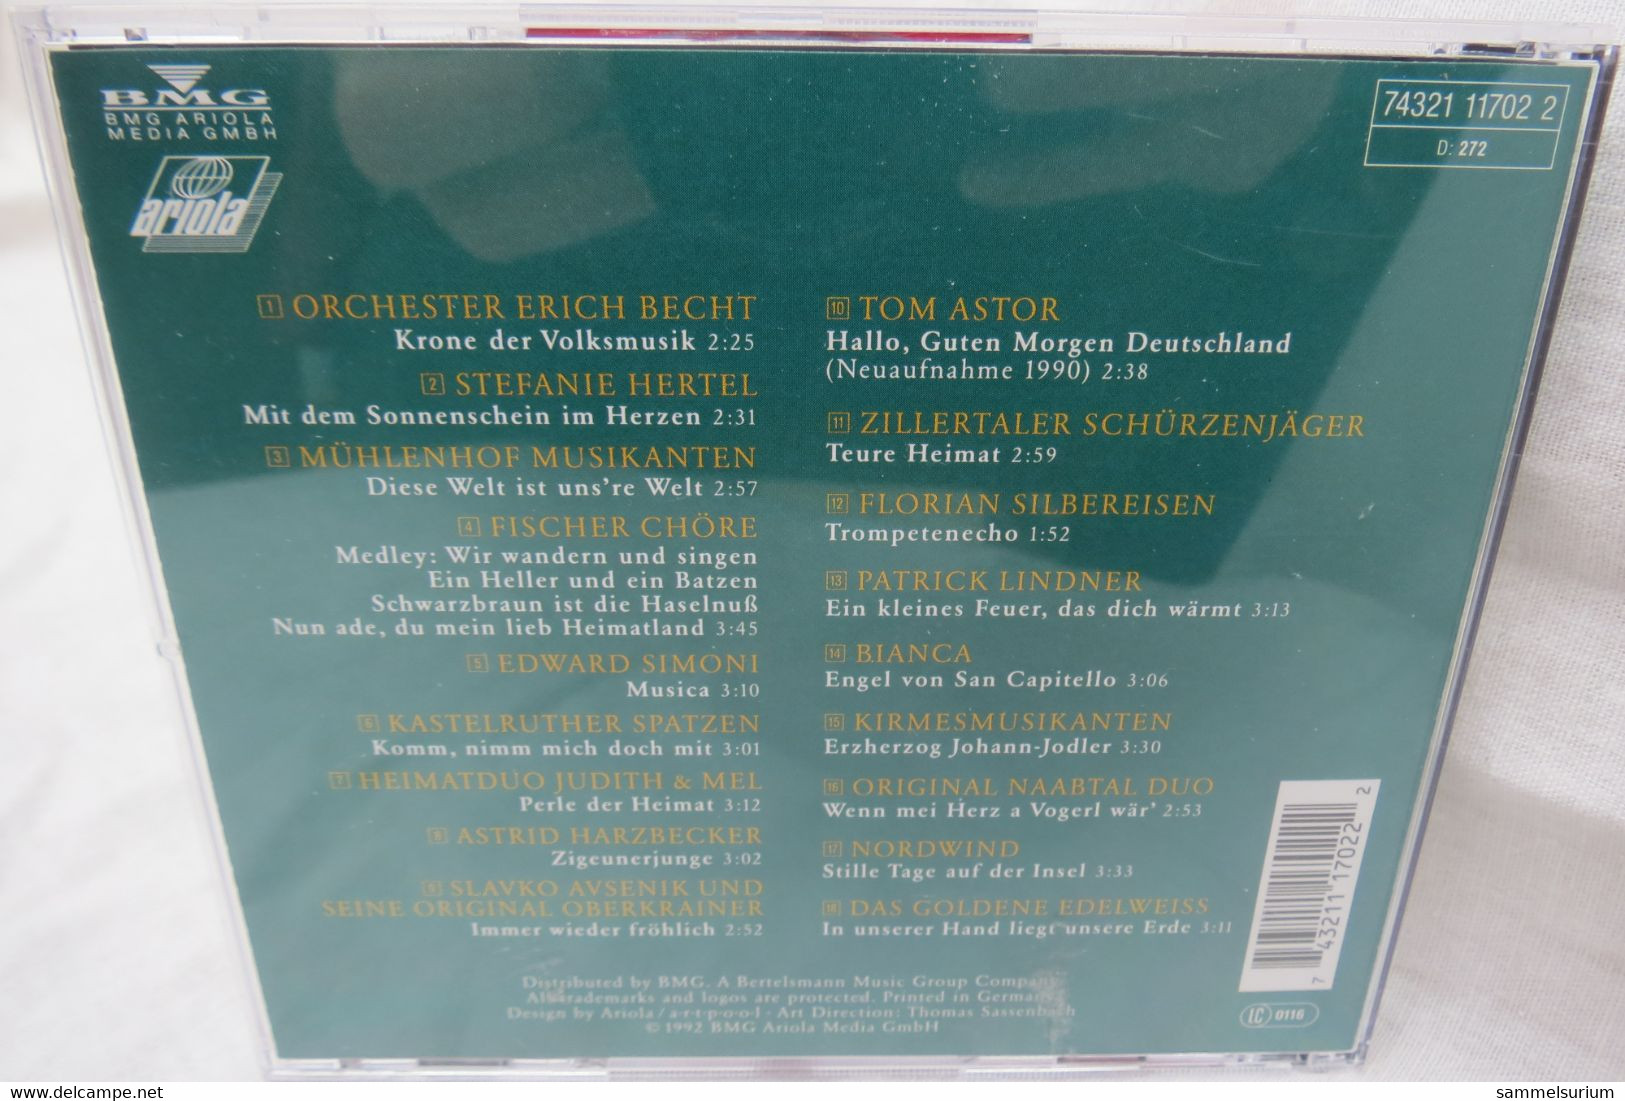 CD "Die Krone Der Volksmusik" Präsentiert Von Erika Bruhn - Otros - Canción Alemana